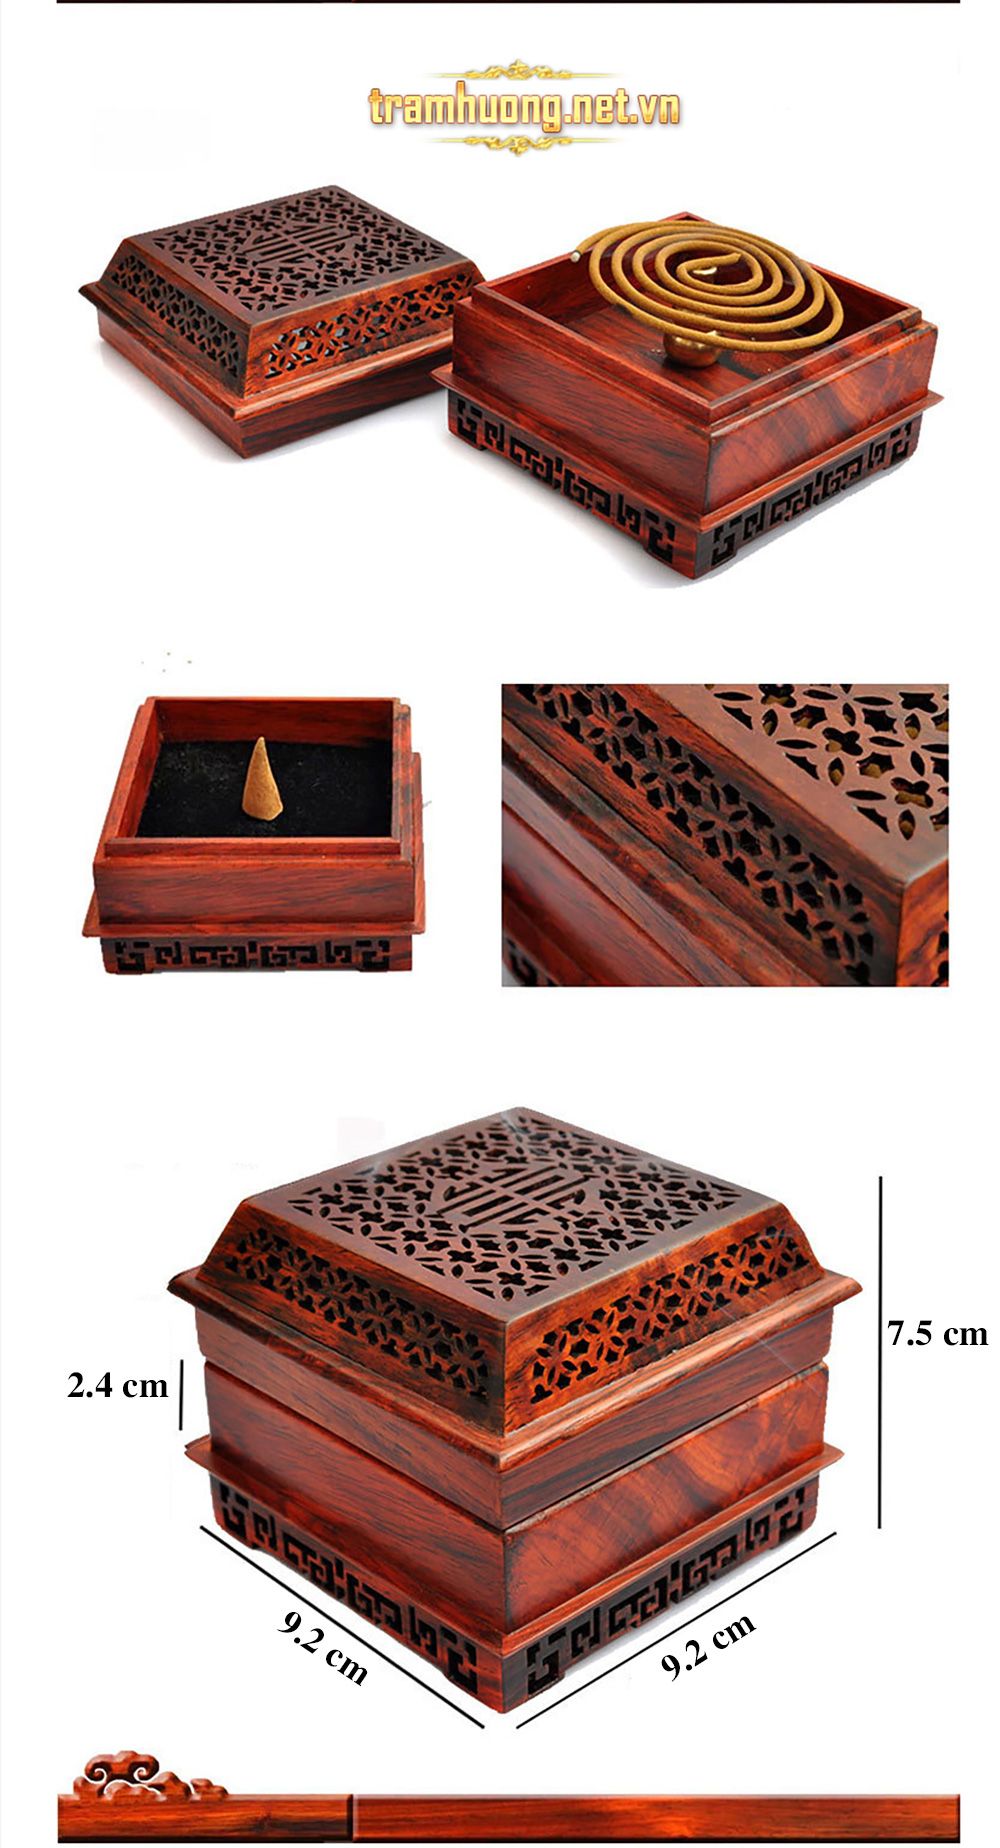 Lư đốt trầm gỗ hồng trắc dáng vuông chạm khắc tinh xảo